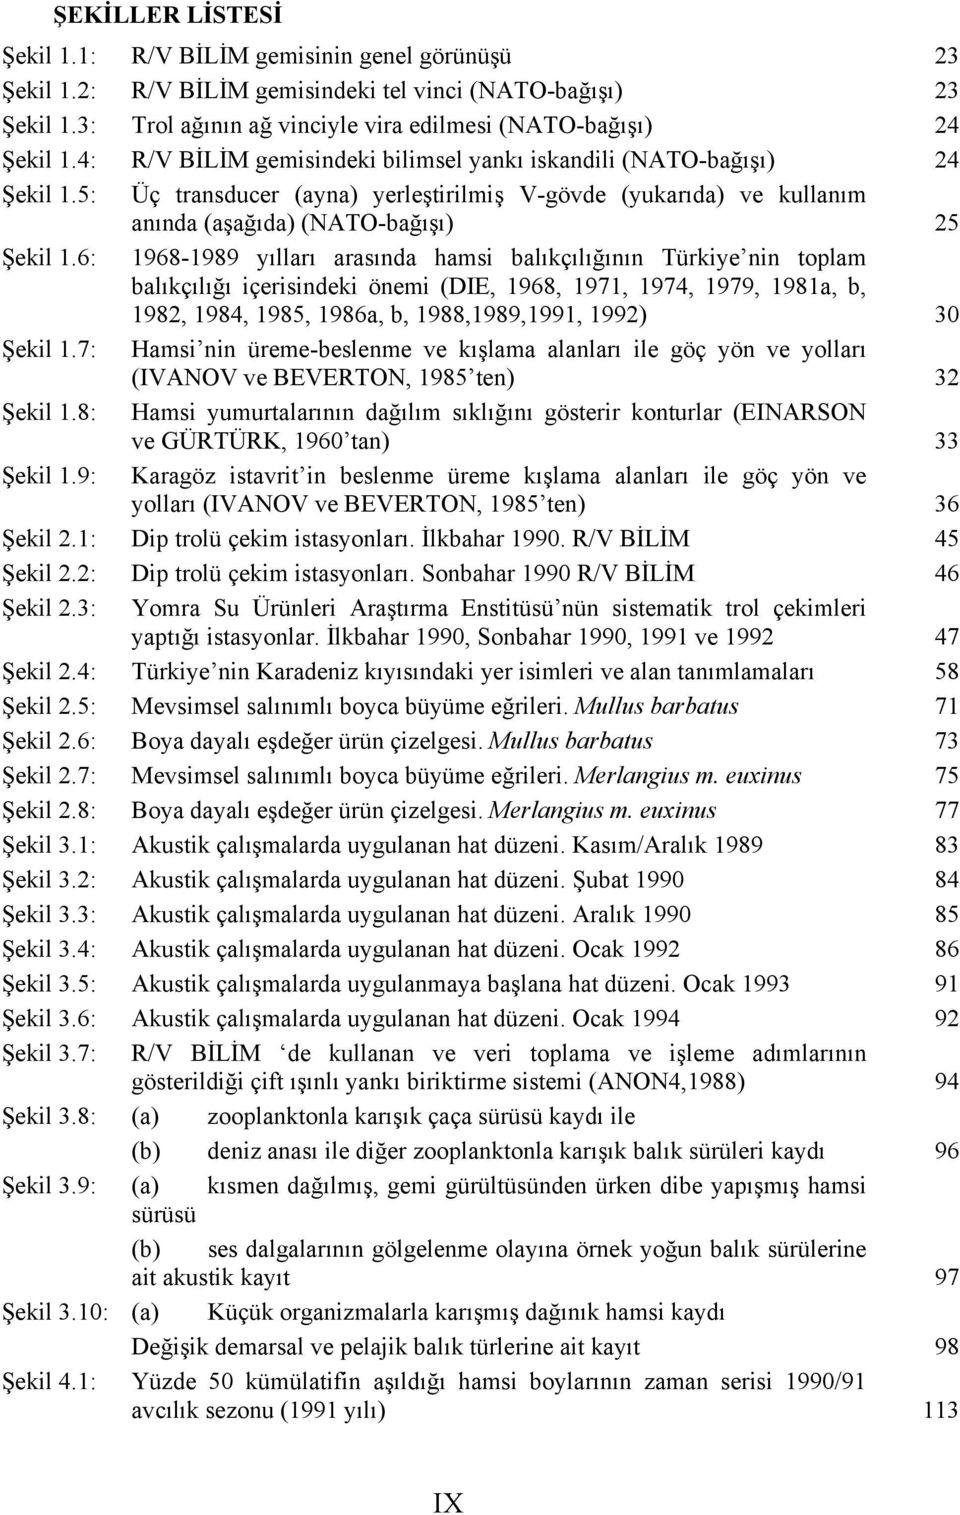 6: 1968-1989 yılları arasında hamsi balıkçılığının Türkiye nin toplam balıkçılığı içerisindeki önemi (DIE, 1968, 1971, 1974, 1979, 1981a, b, 1982, 1984, 1985, 1986a, b, 1988,1989,1991, 1992) 30 Şekil